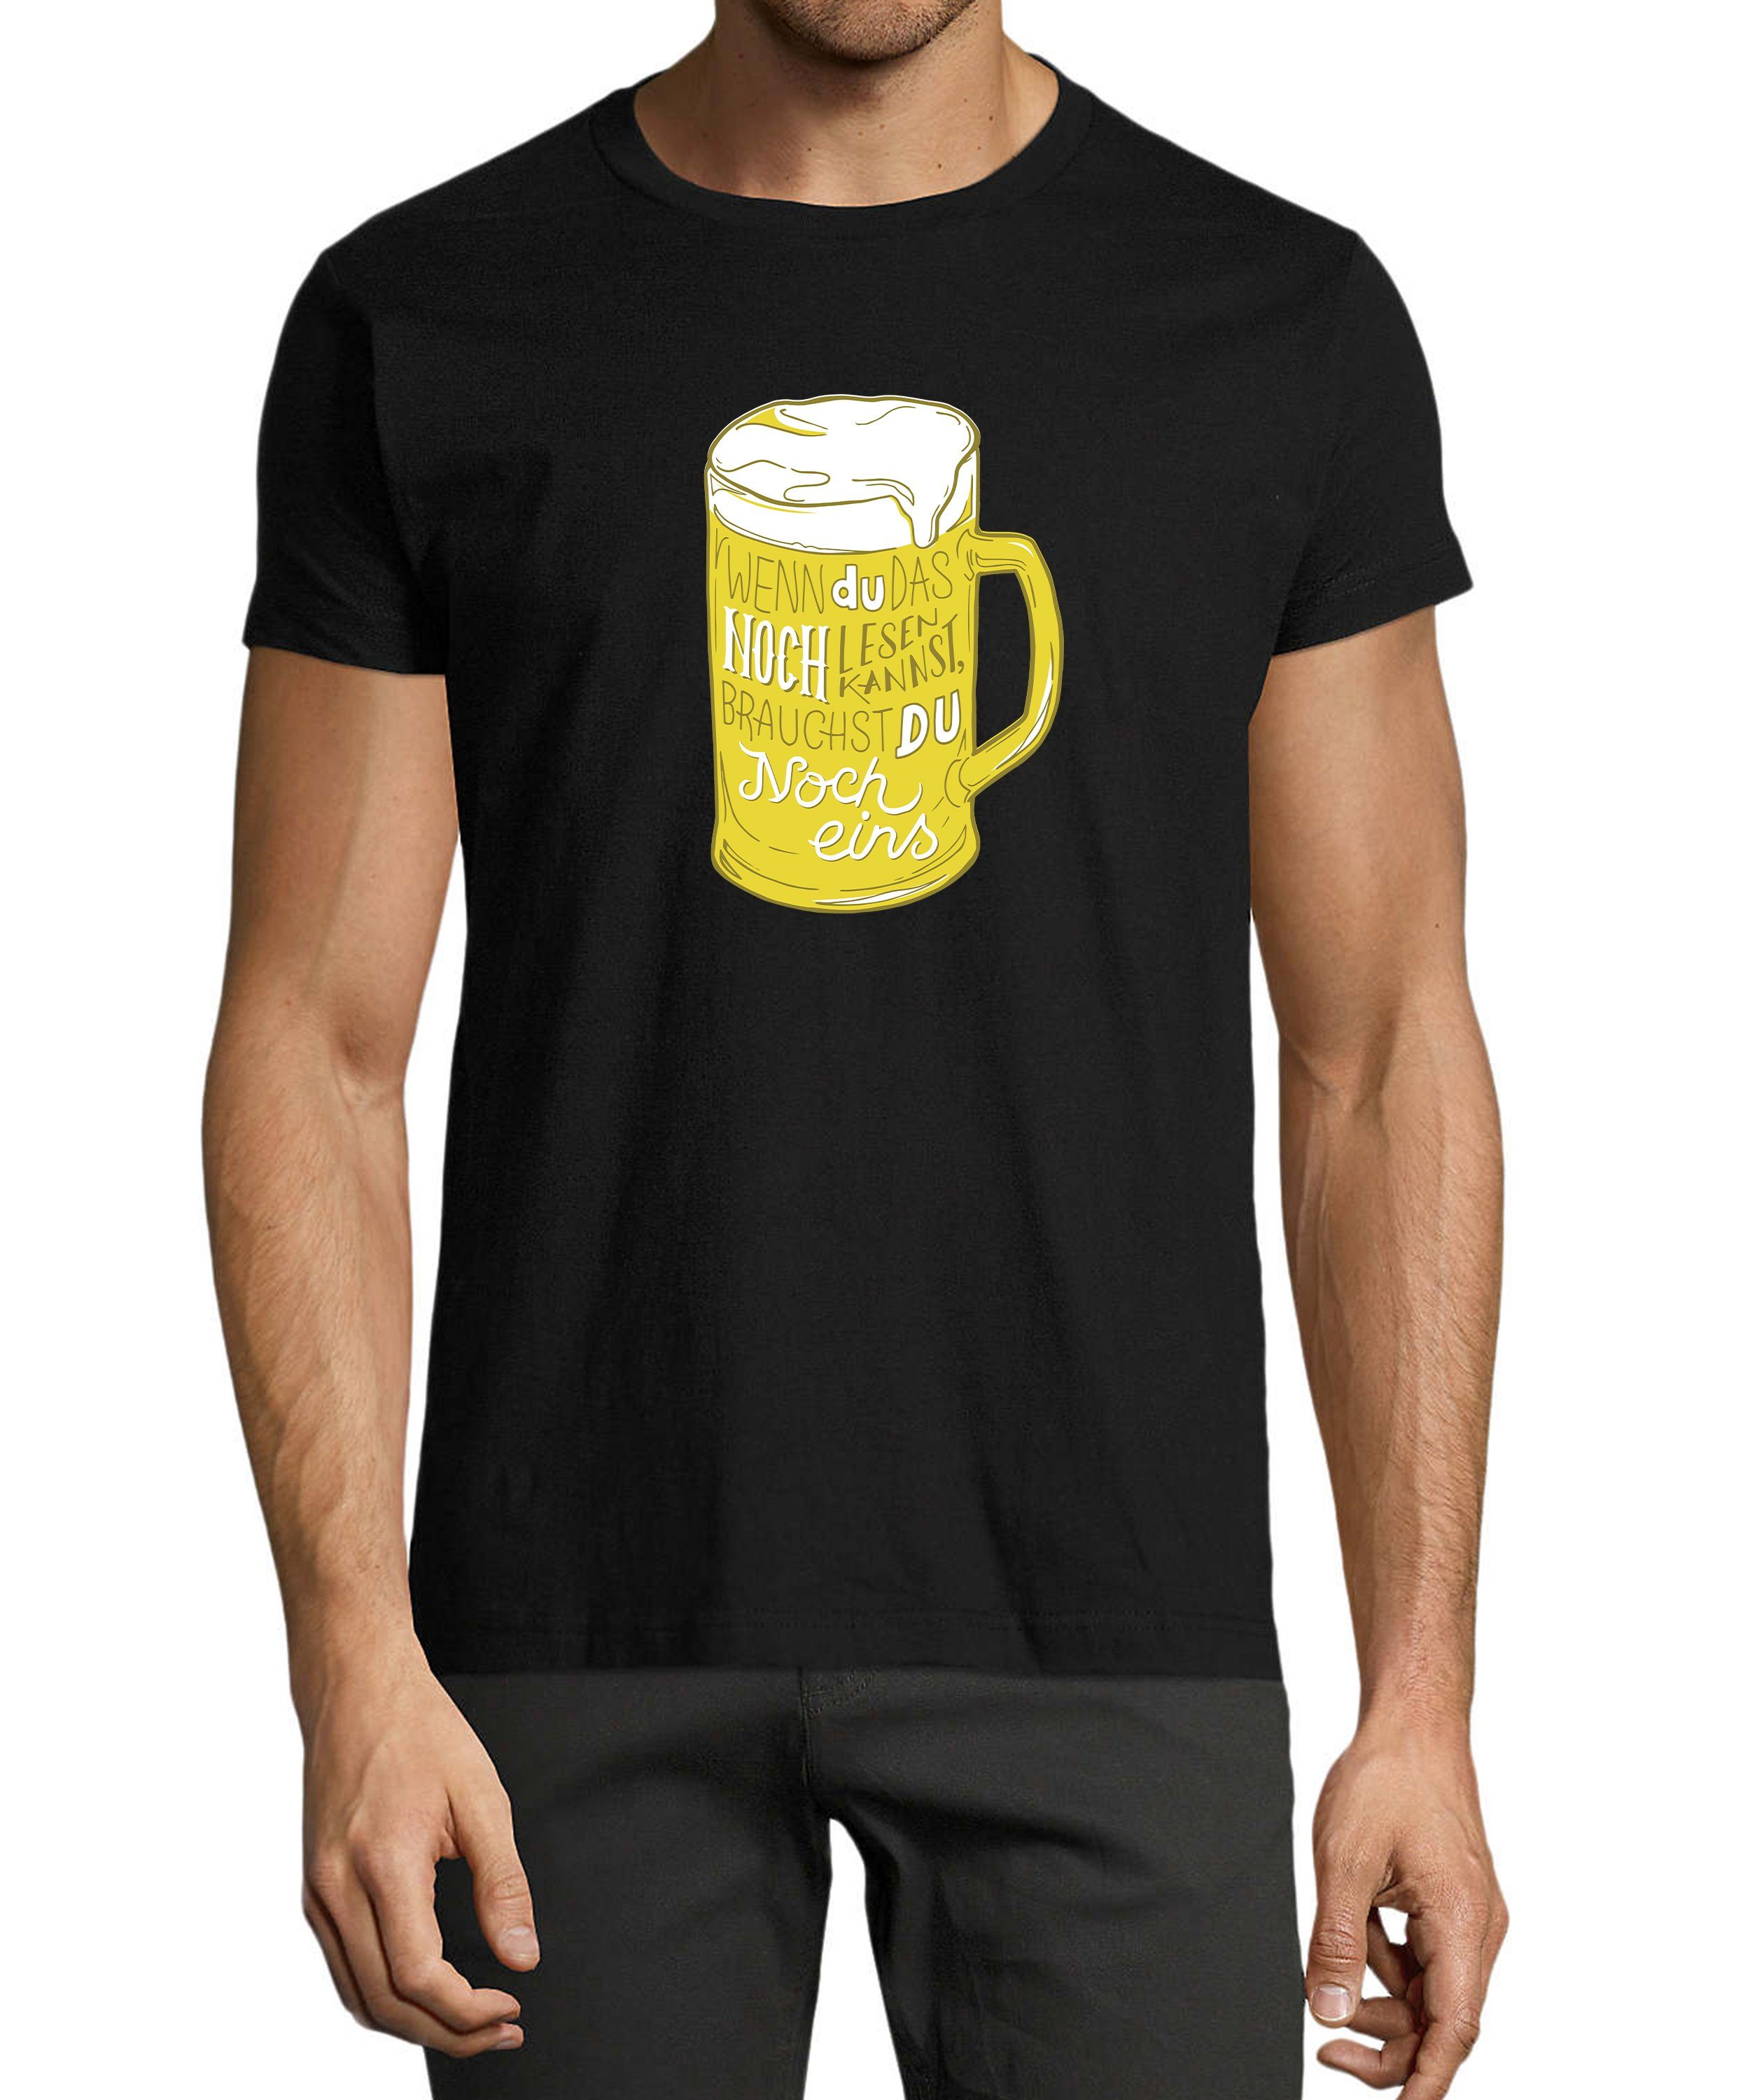 MyDesign24 T-Shirt Herren Fun Print Shirt - Oktoberfest Trinkshirt mit witzigem Spruch Baumwollshirt mit Aufdruck Regular Fit, i310 schwarz